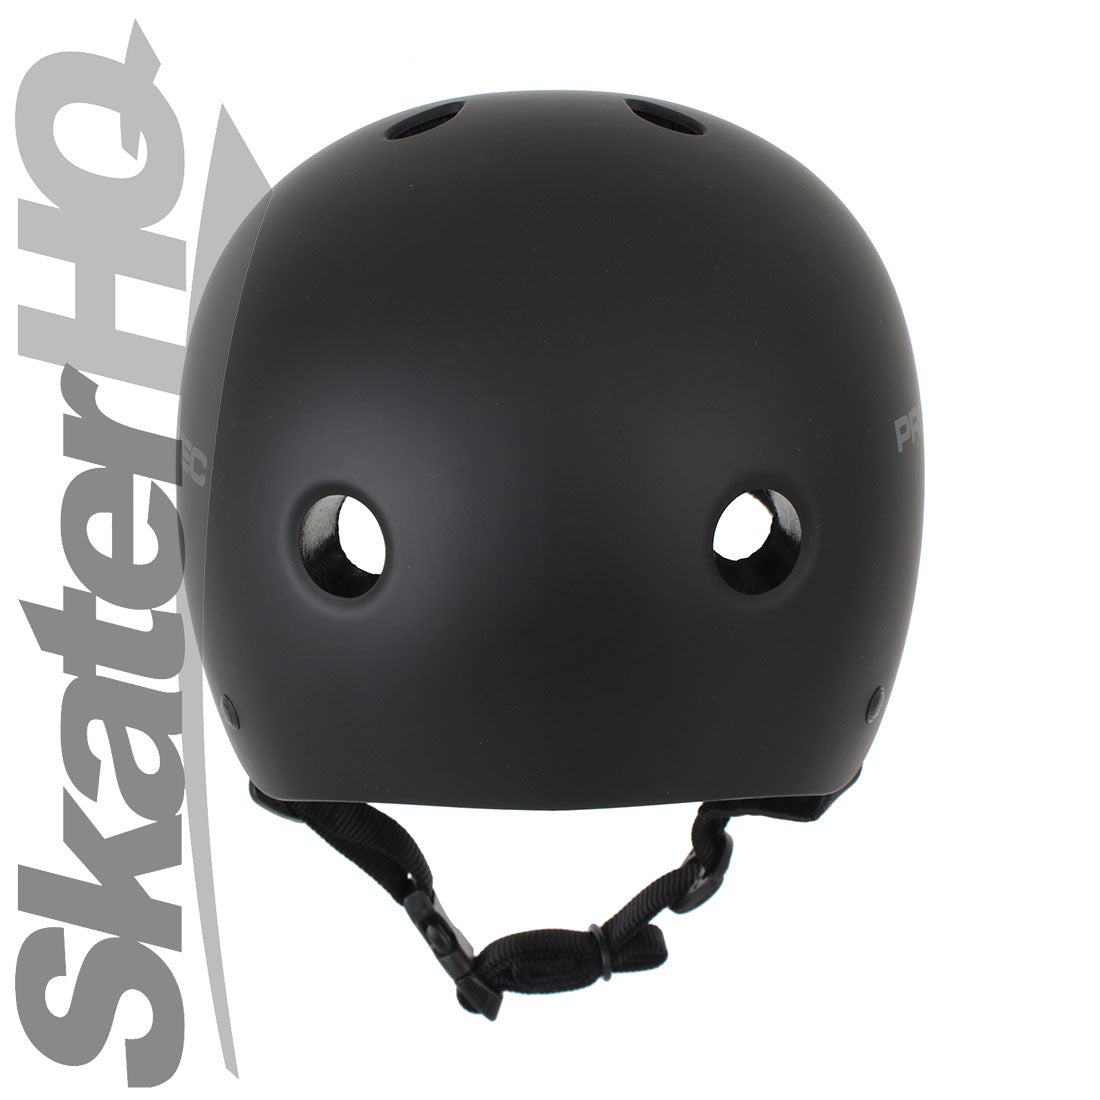 Pro-Tec Classic Cert Matte Black - Large Helmets